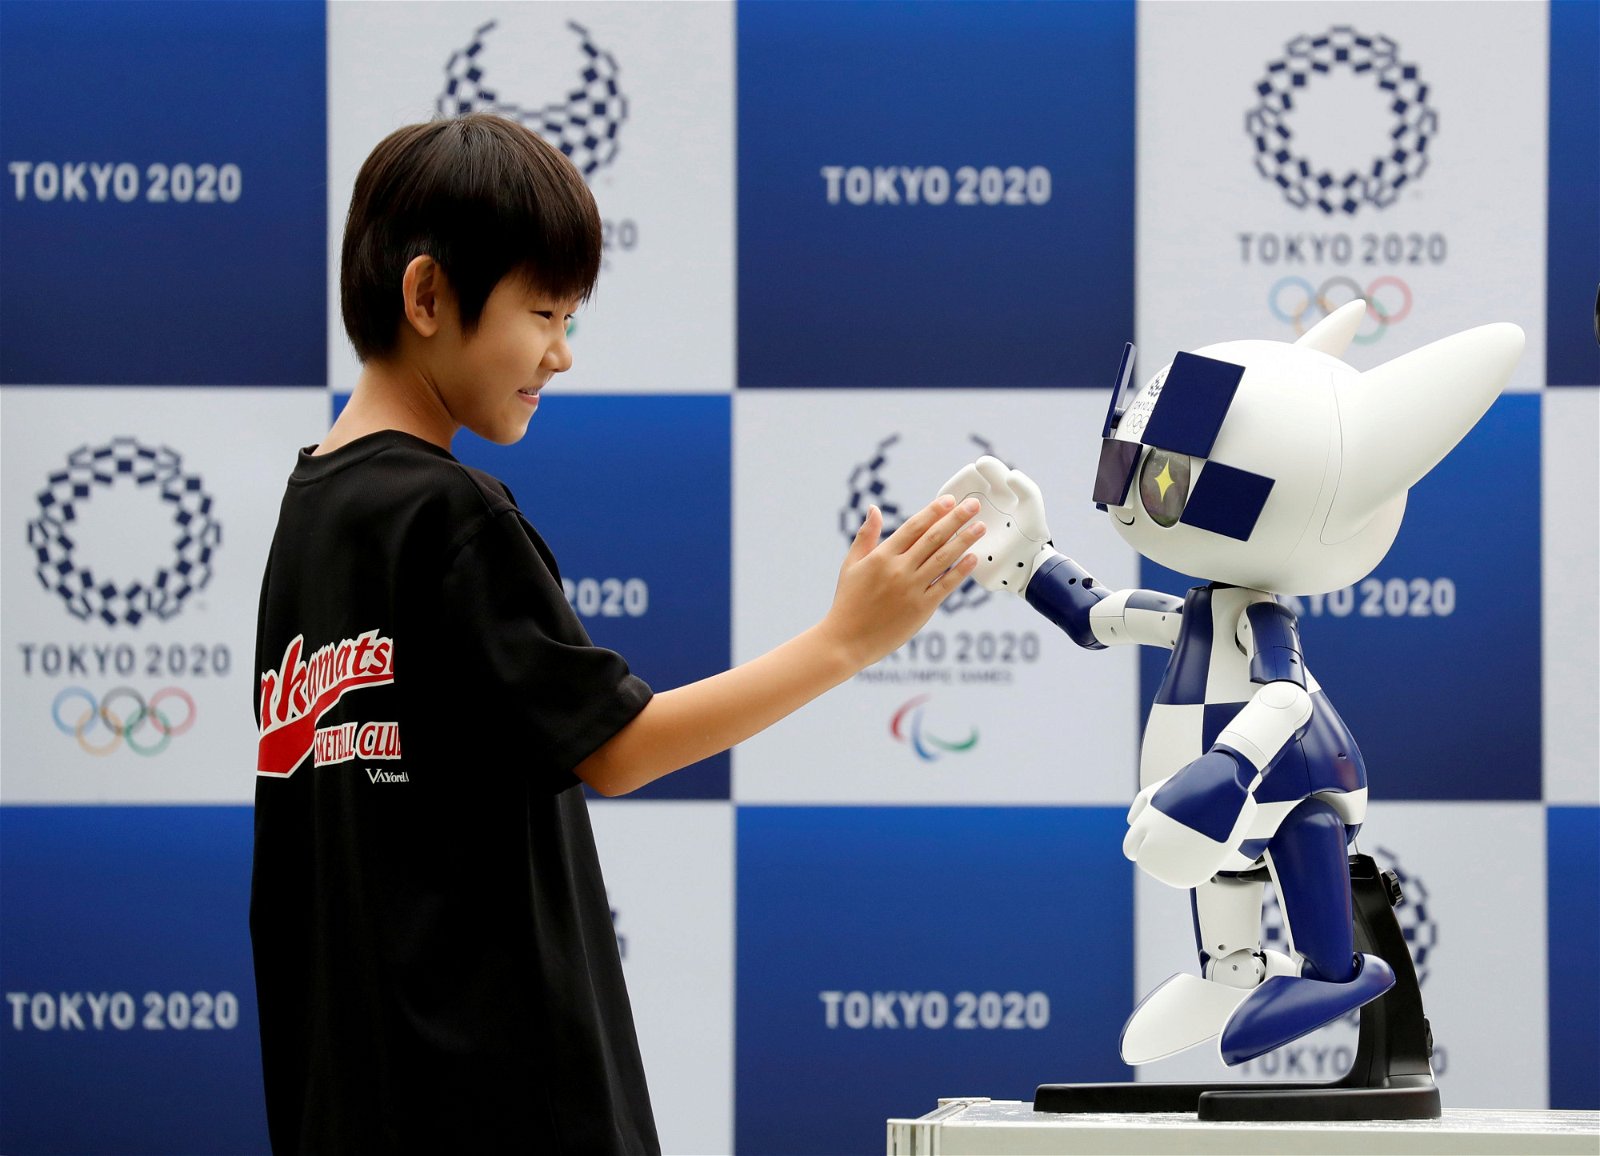 一名男孩正与东京奥运会吉祥物机器人——未来永远郎拍手，模样逗趣。东京奥组委早前公布了“东京2020机器人计划”，希望让机器人在奥运会中，为观众提供各种协助。